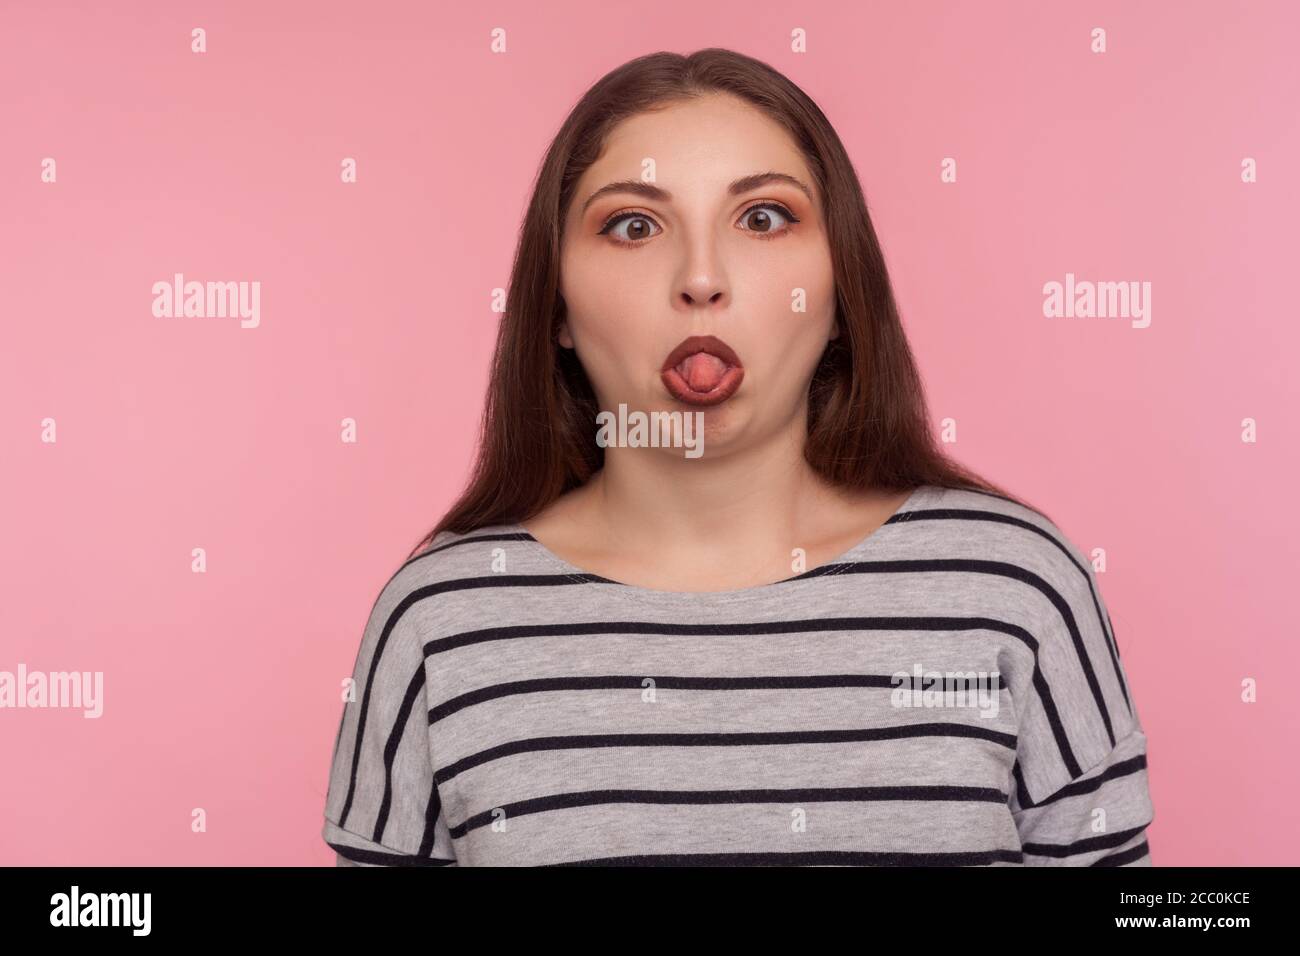 Portrait einer lustigen dummen amüsanten Frau im gestreiften Sweatshirt, die mit gekreuzten Augen steht, die Zunge zeigt und einen dummen, hirnlosen Gesichtsausdruck macht Stockfoto